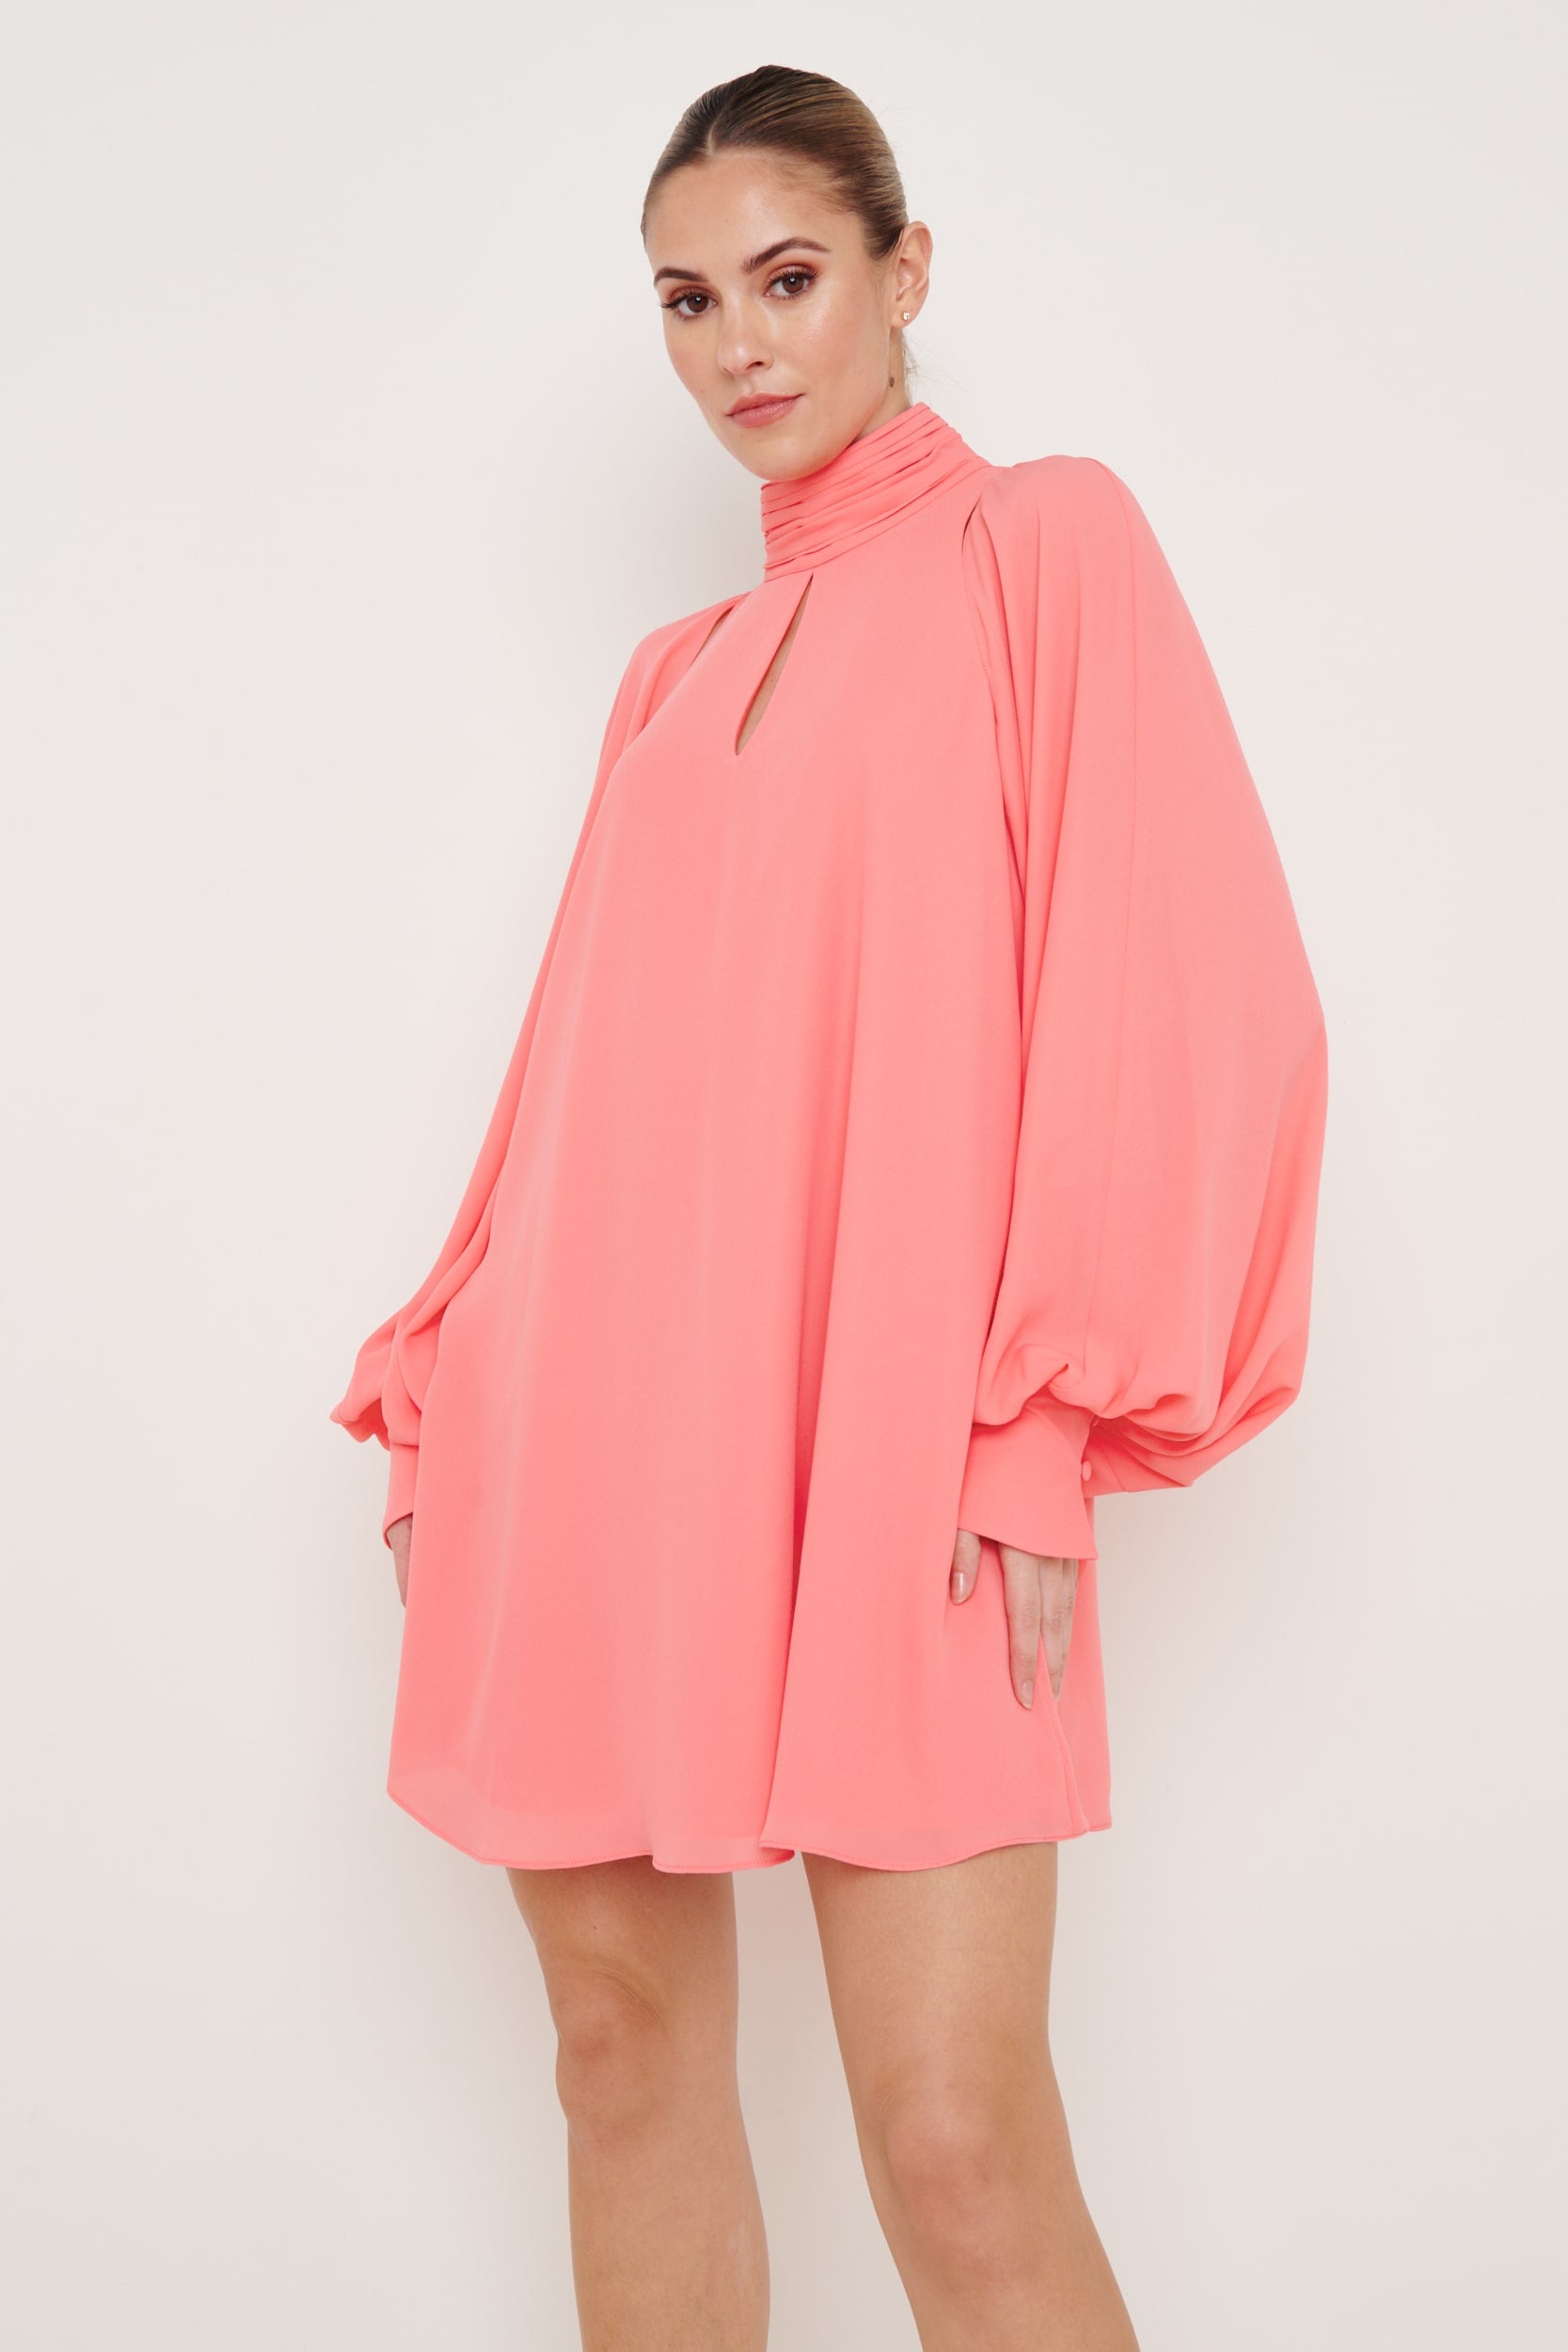 Romy Chiffon Mini Dress - Coral, 12